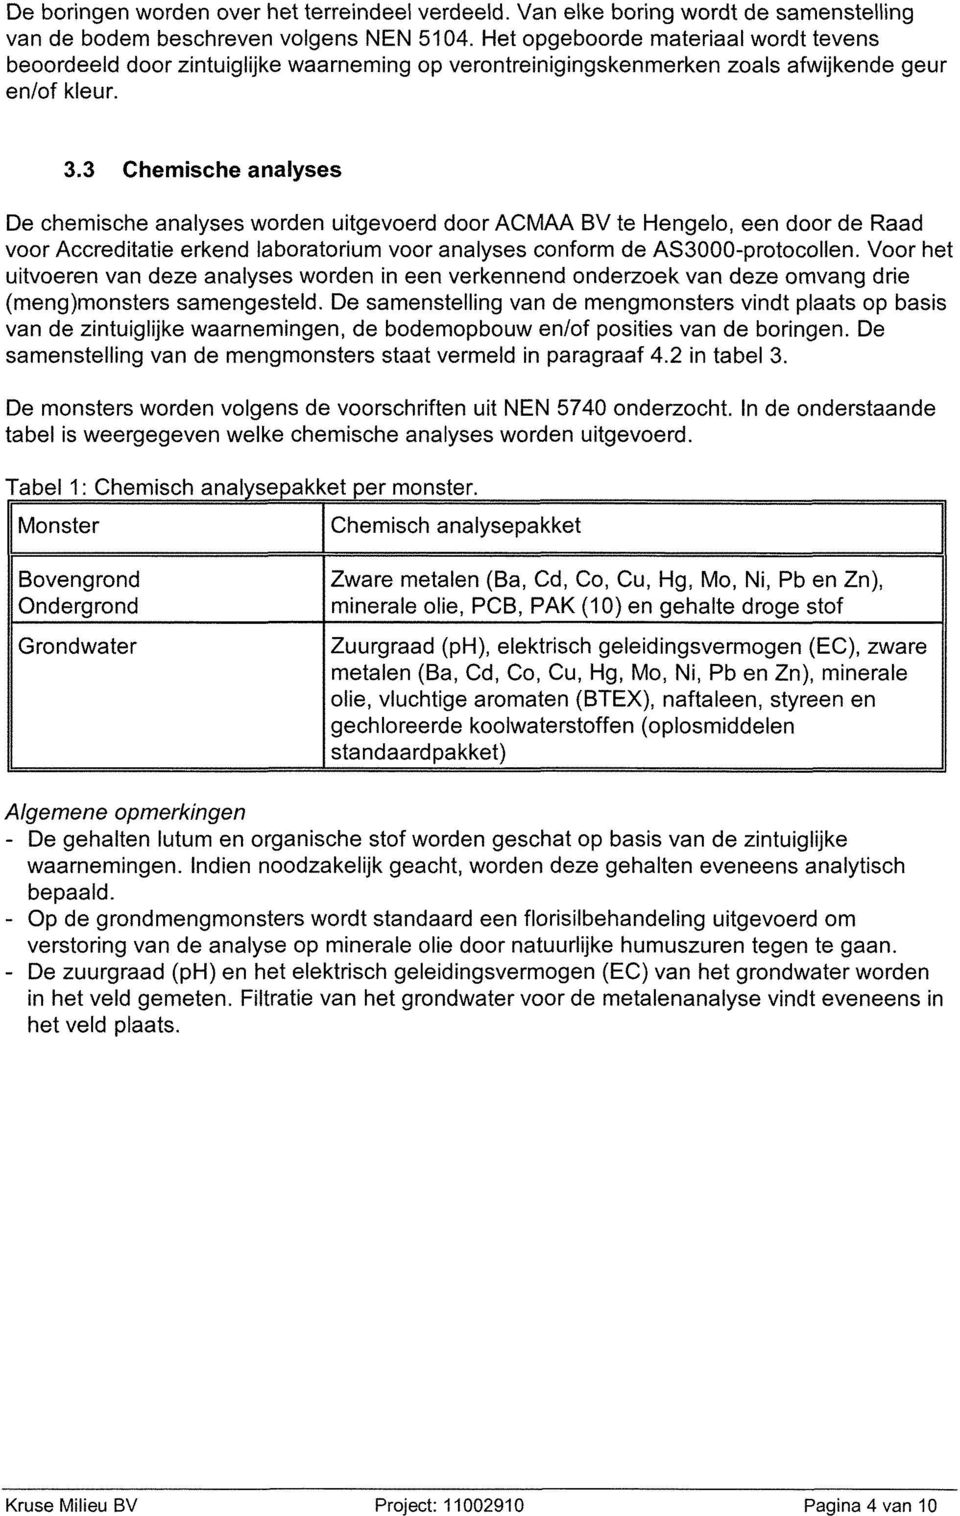 3 Chemische analyses De chemische analyses worden uitgevoerd door ACMAA BV te Hengelo, een door de Raad voor Accreditatie erkend laboratorium voor analyses conform de AS3000-protocollen.